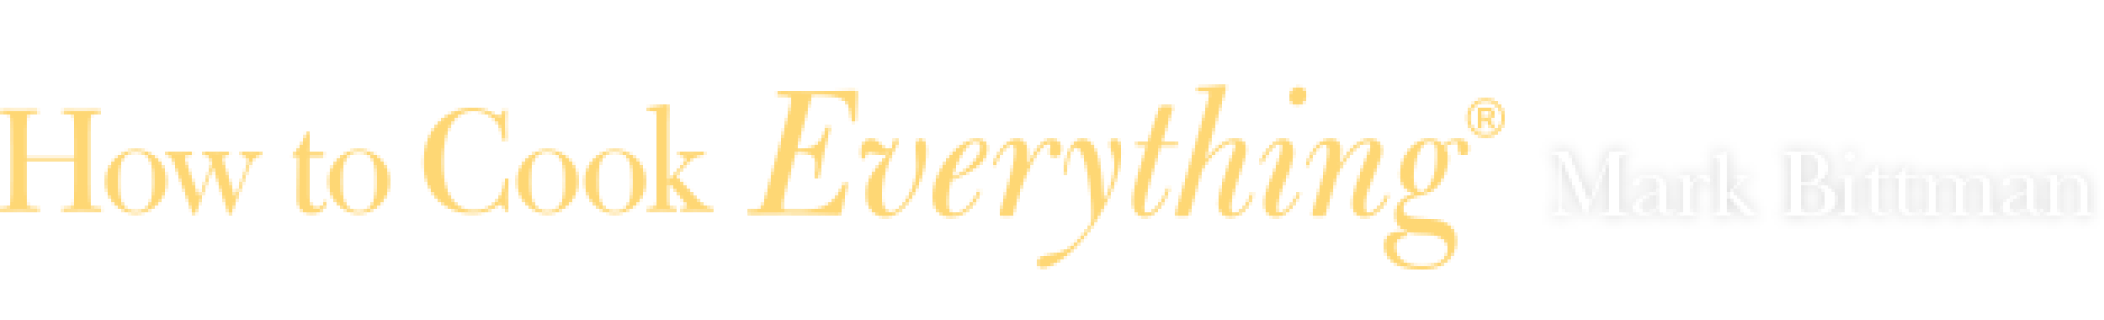 howtocookeverything-logo